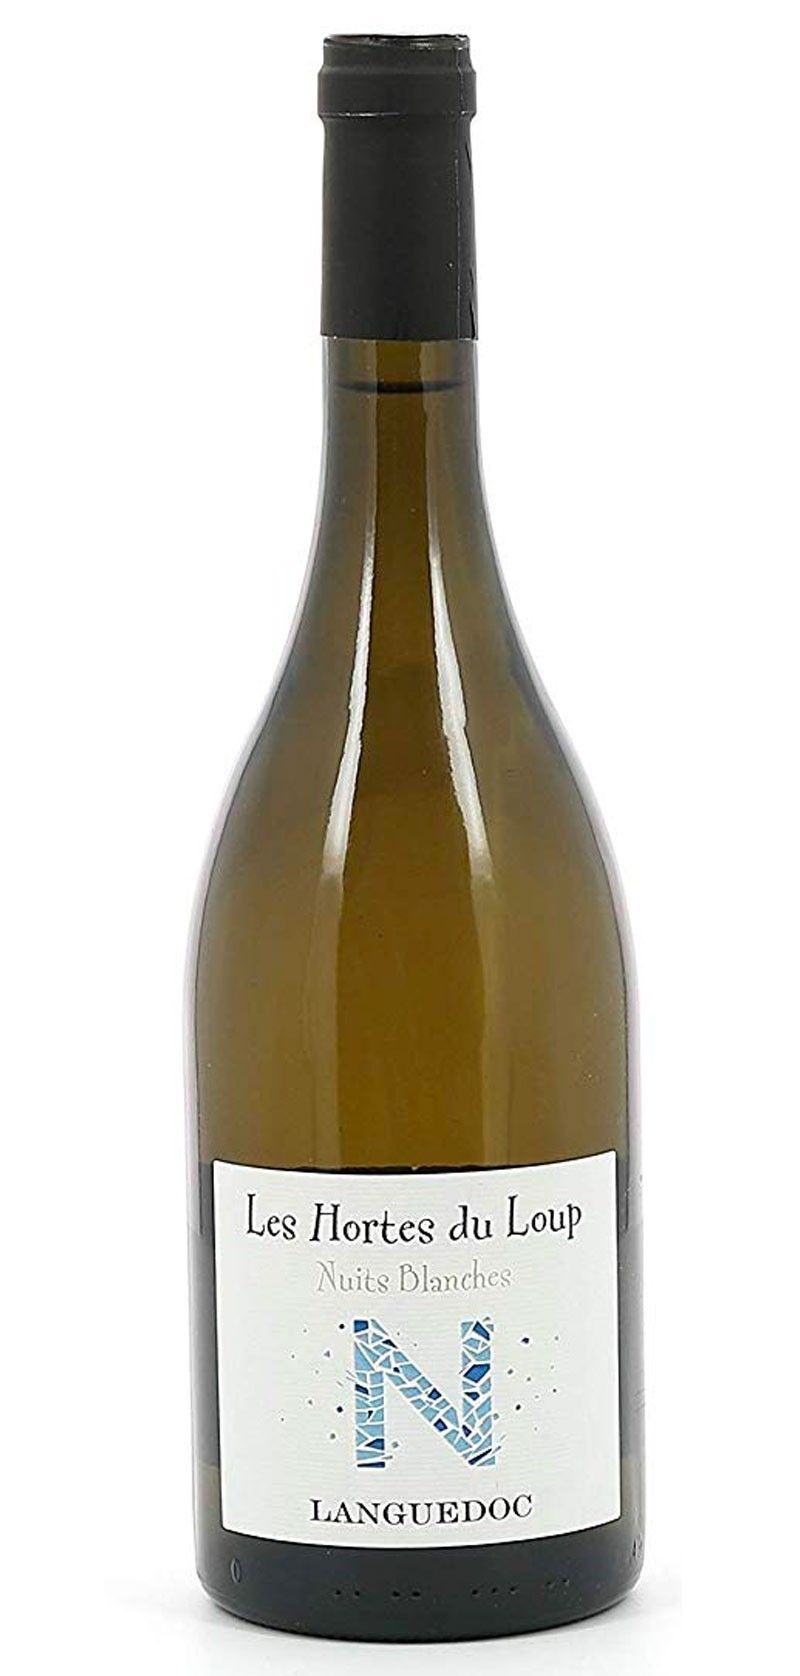 Les Hortes du Loup Nuits blanches Languedoc - Vin Blanc 